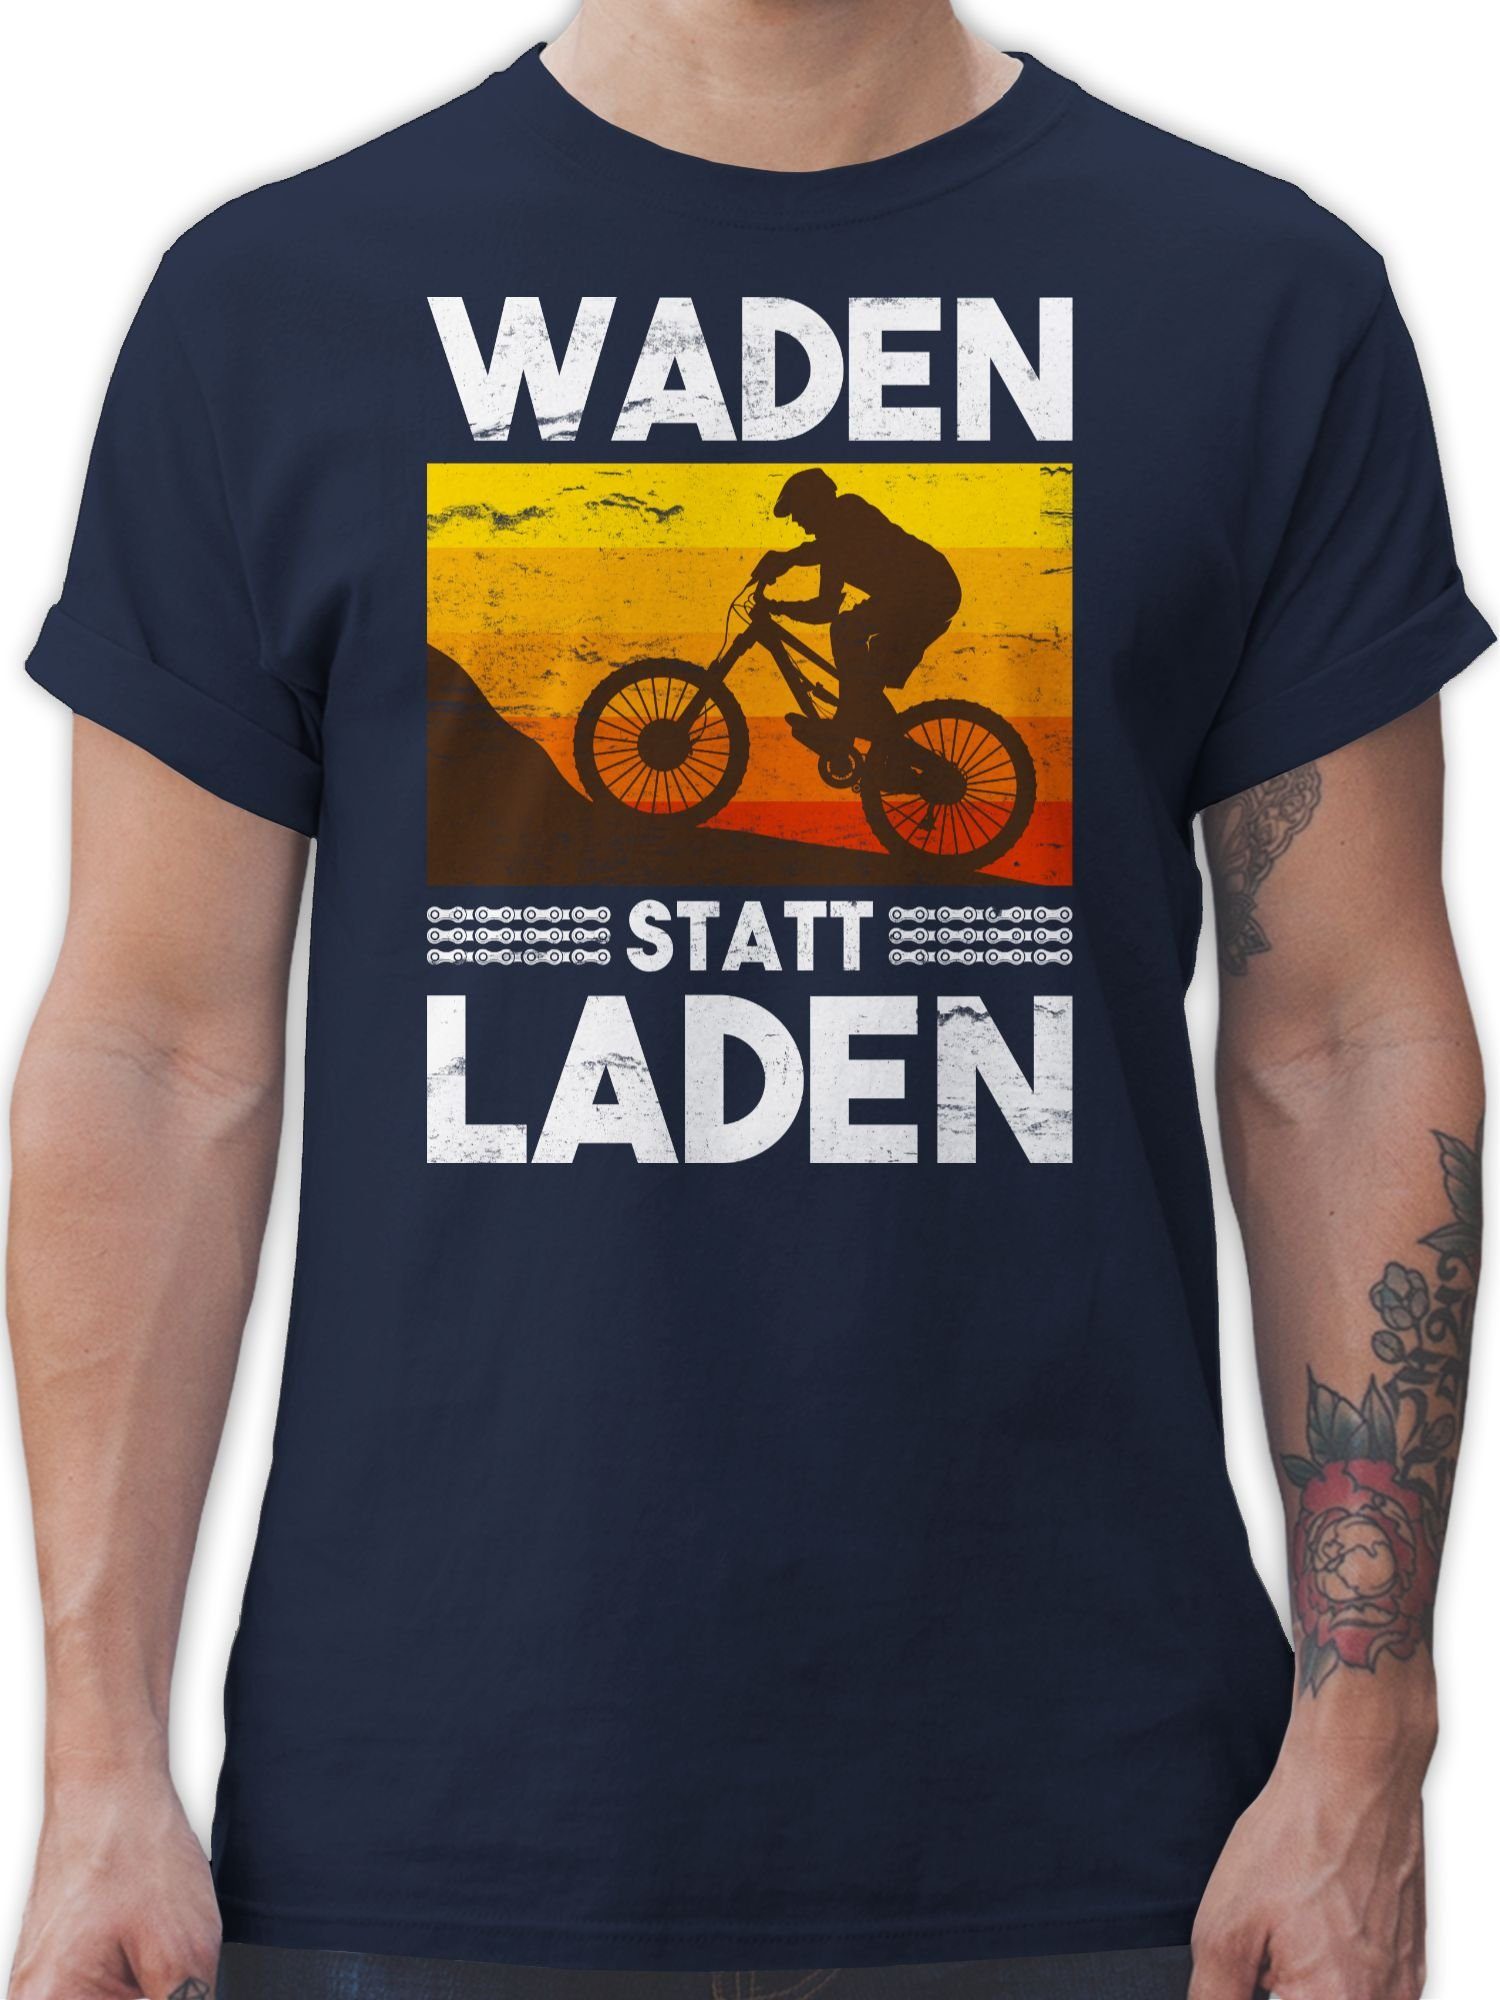 02 Vintage Radsport Waden Navy weiß Laden Shirtracer Fahrrad Bekleidung T-Shirt statt Blau